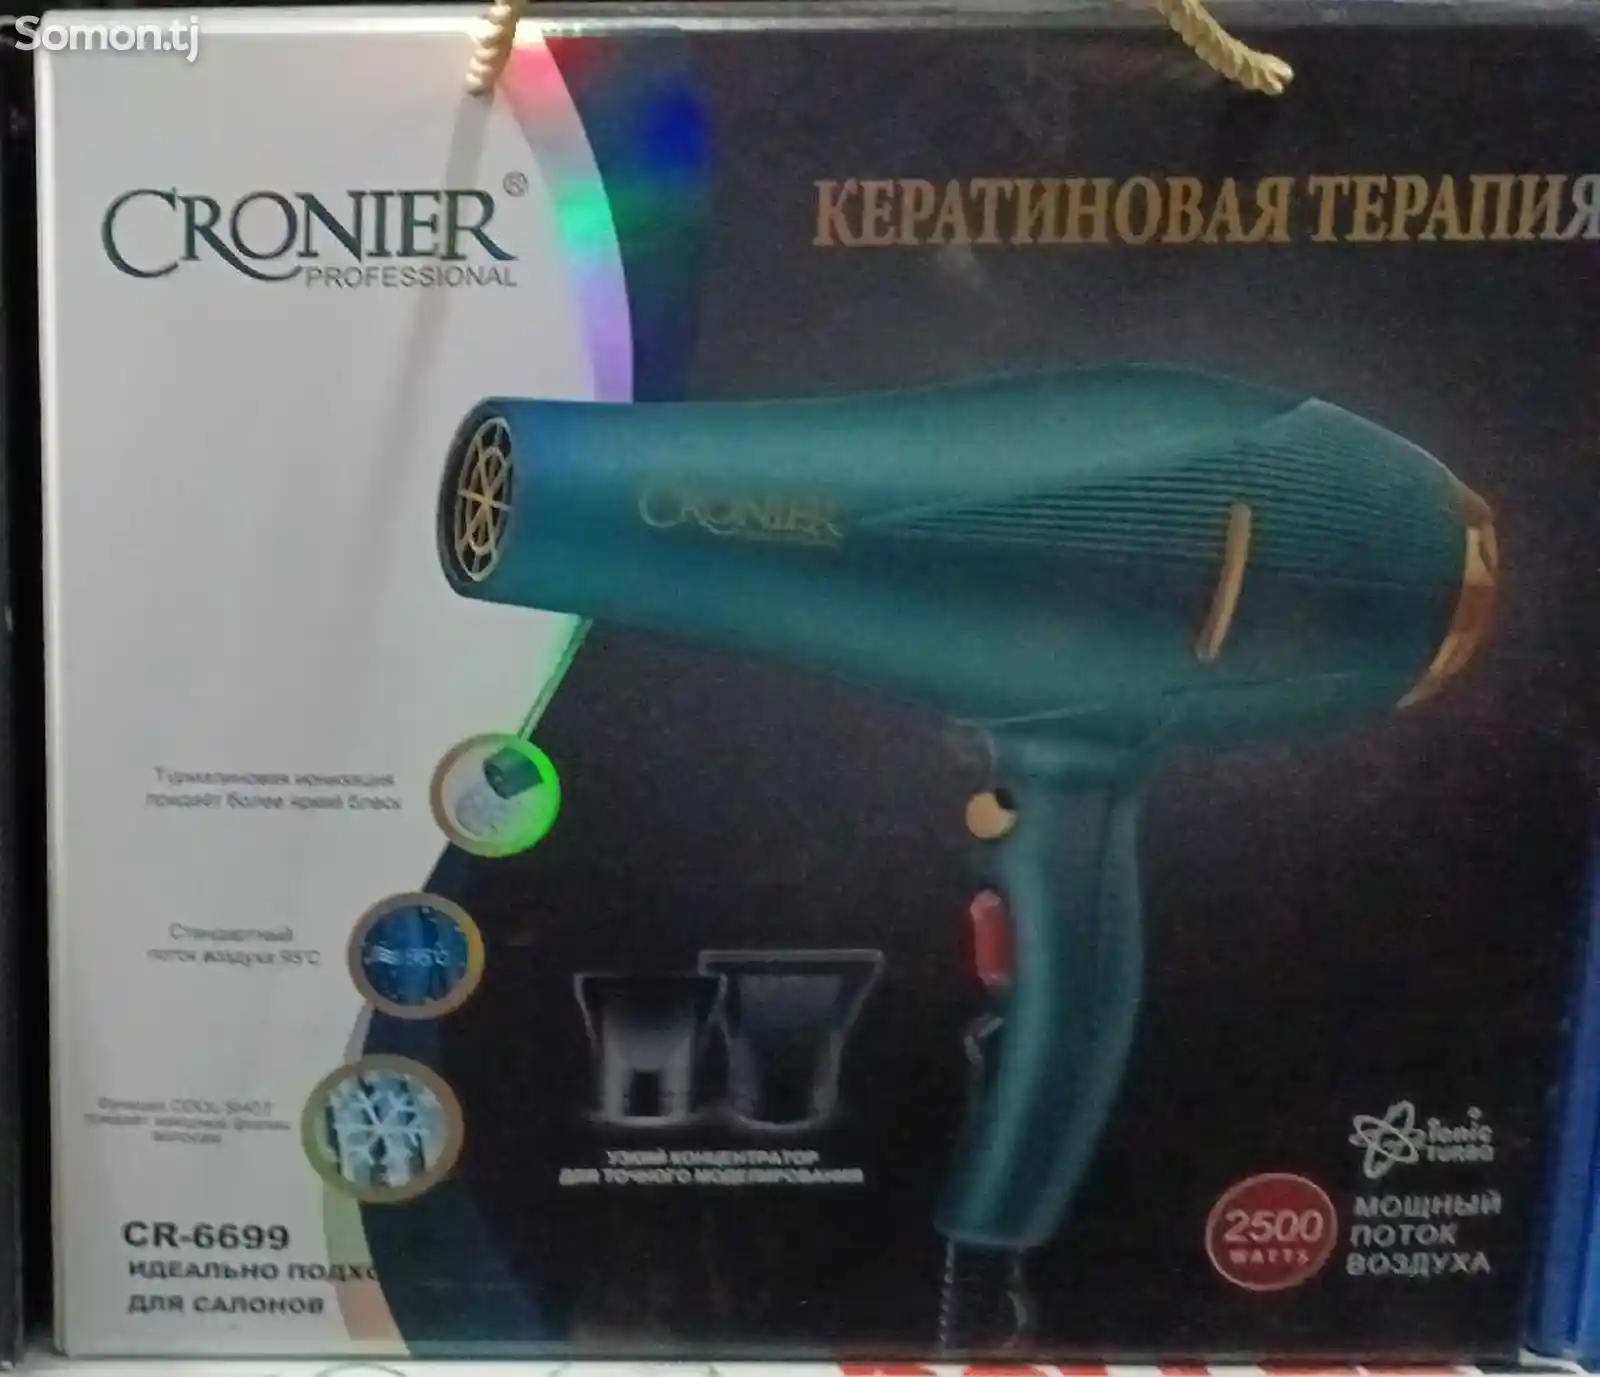 Фен Cronier CR-6699-1